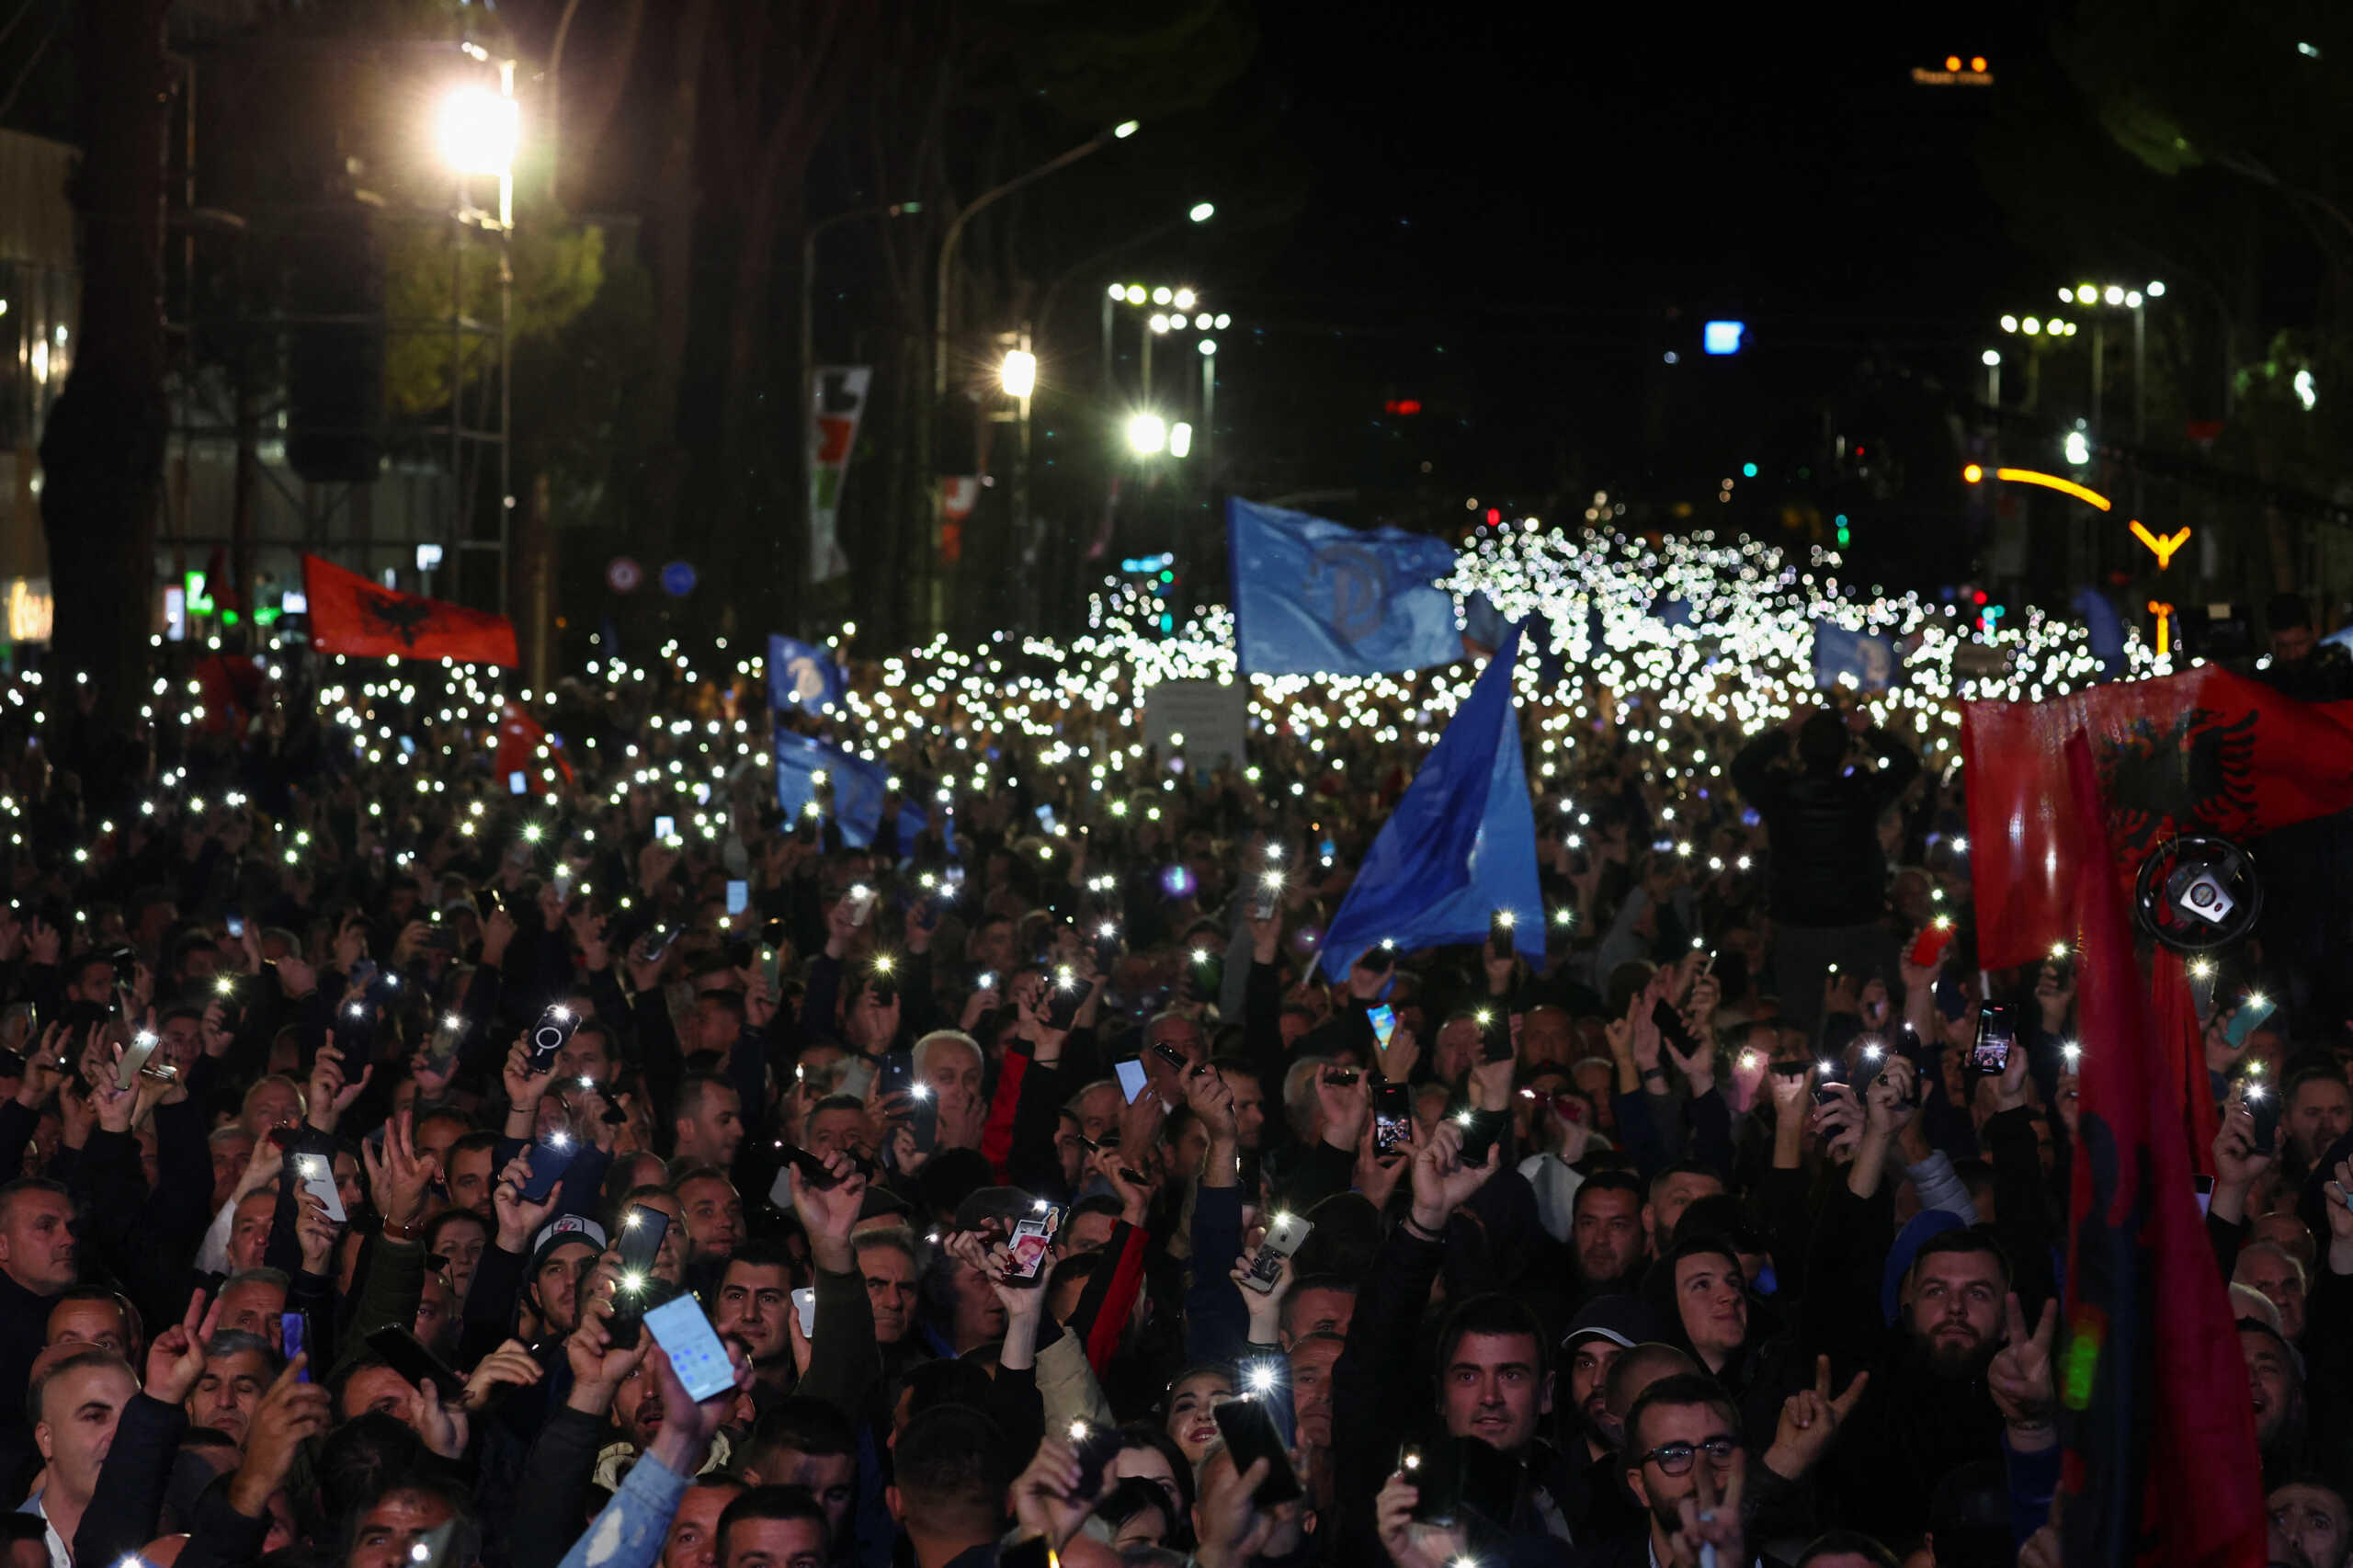 Αλβανία: Ογκώδης διαδήλωση υποστηρικτών του Σαλί Μπερίσα – Μικρής έκτασης επεισόδια